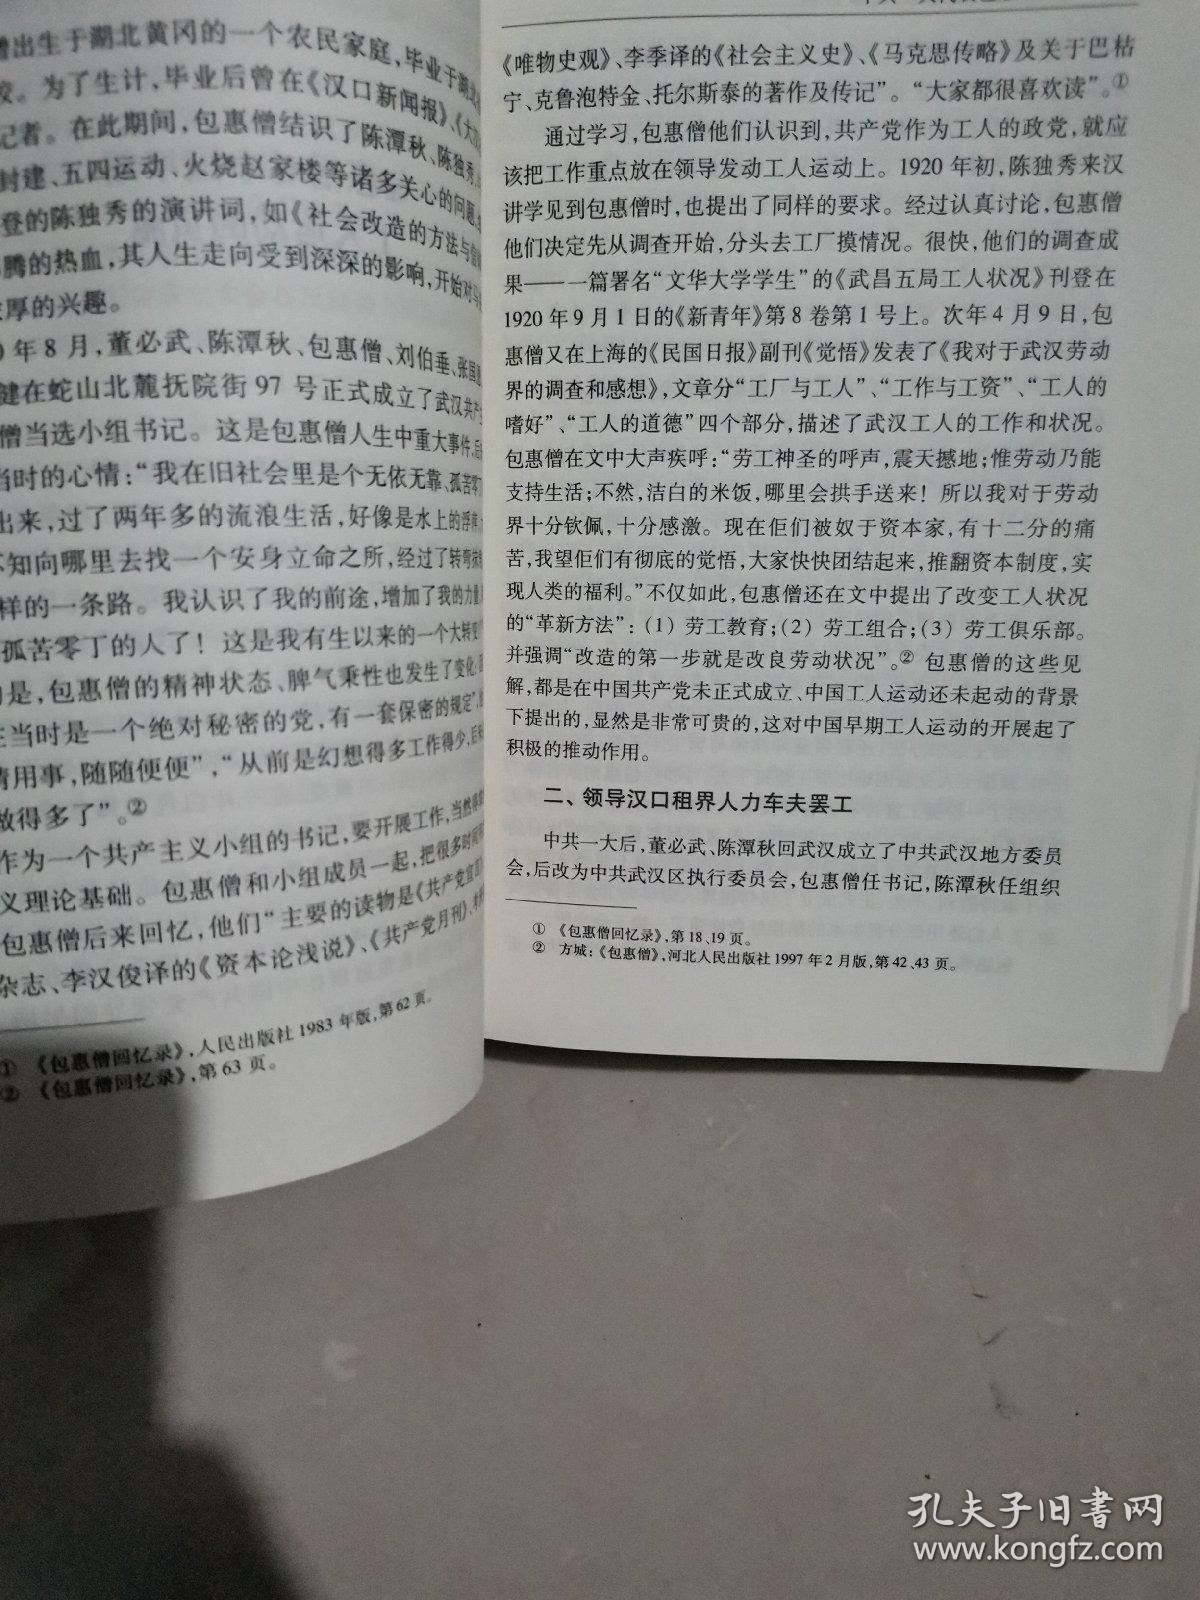 上海革命史资料与研究. 14